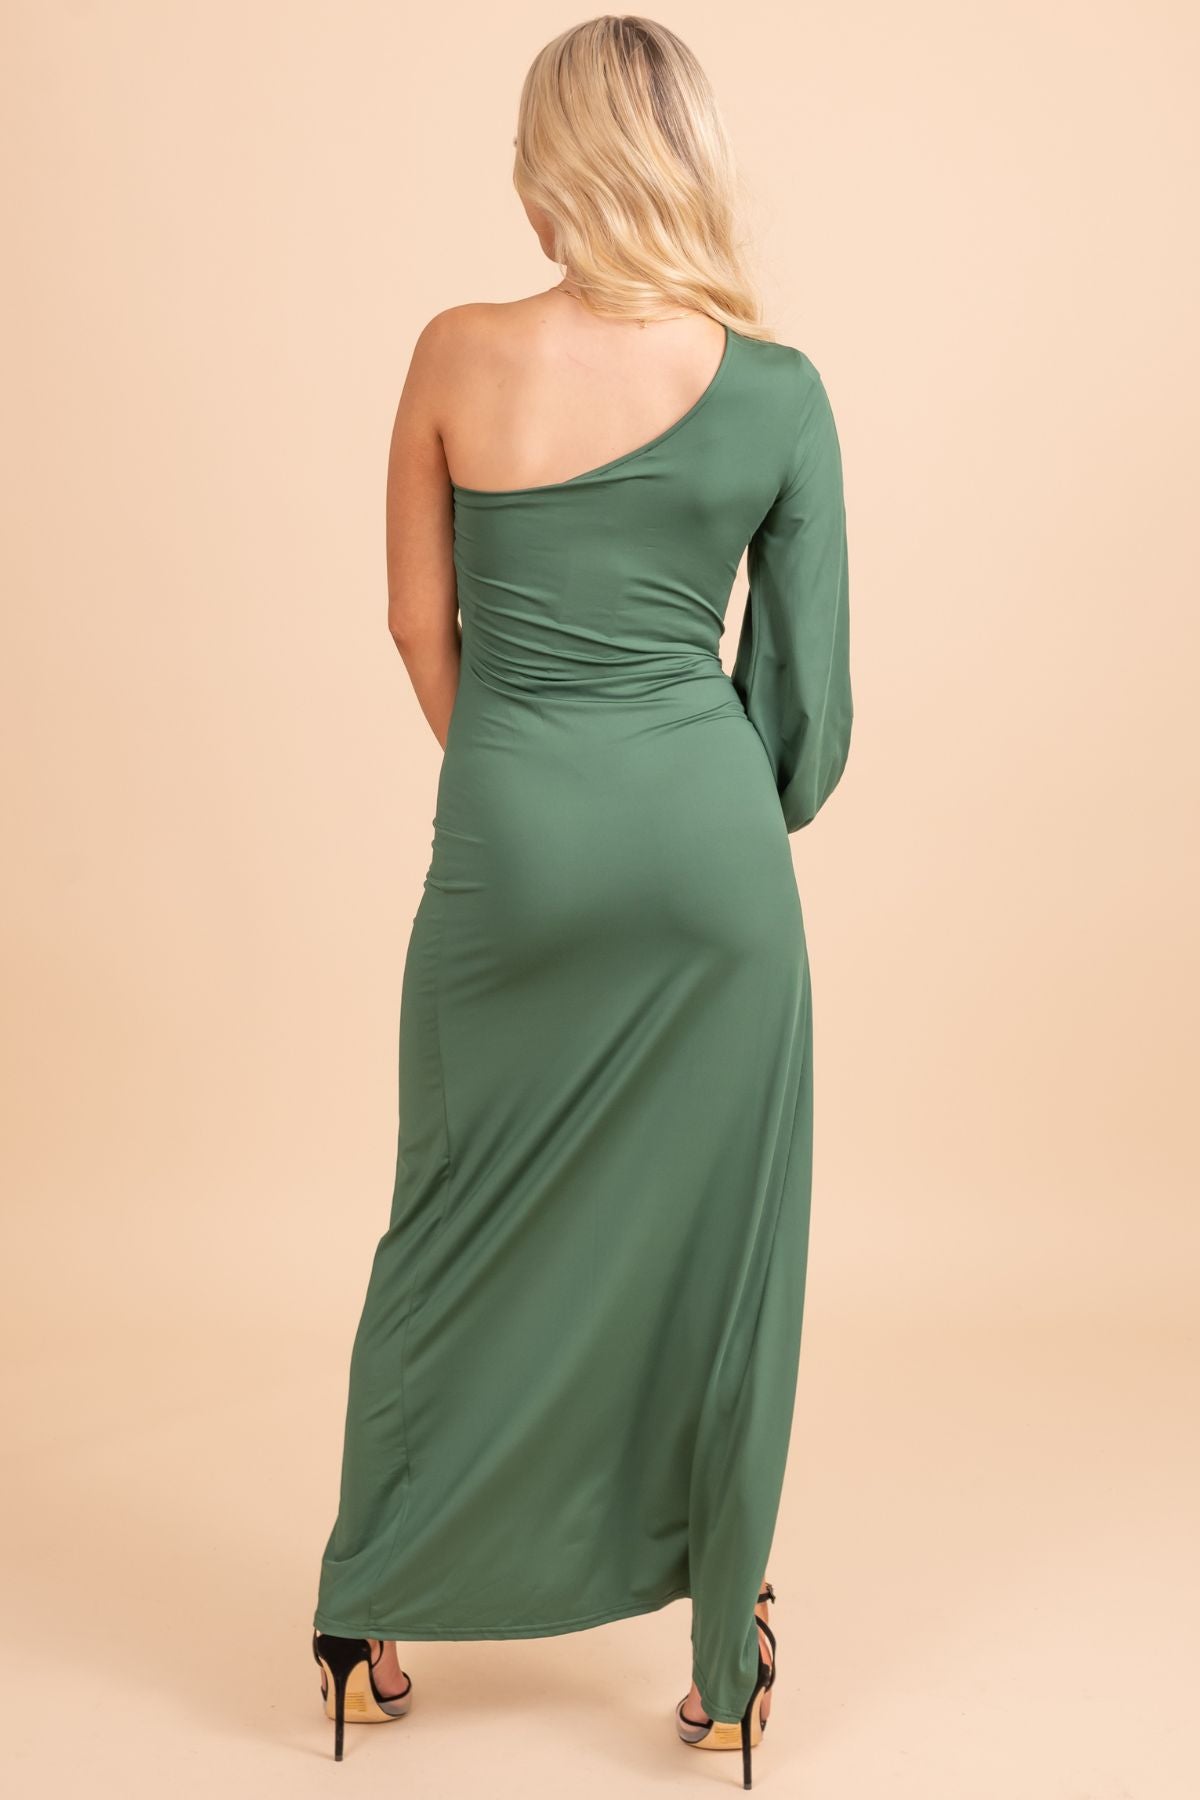 Women's Maxi Dress | One Shoulder Maxi Dress | DOYIN LONDON